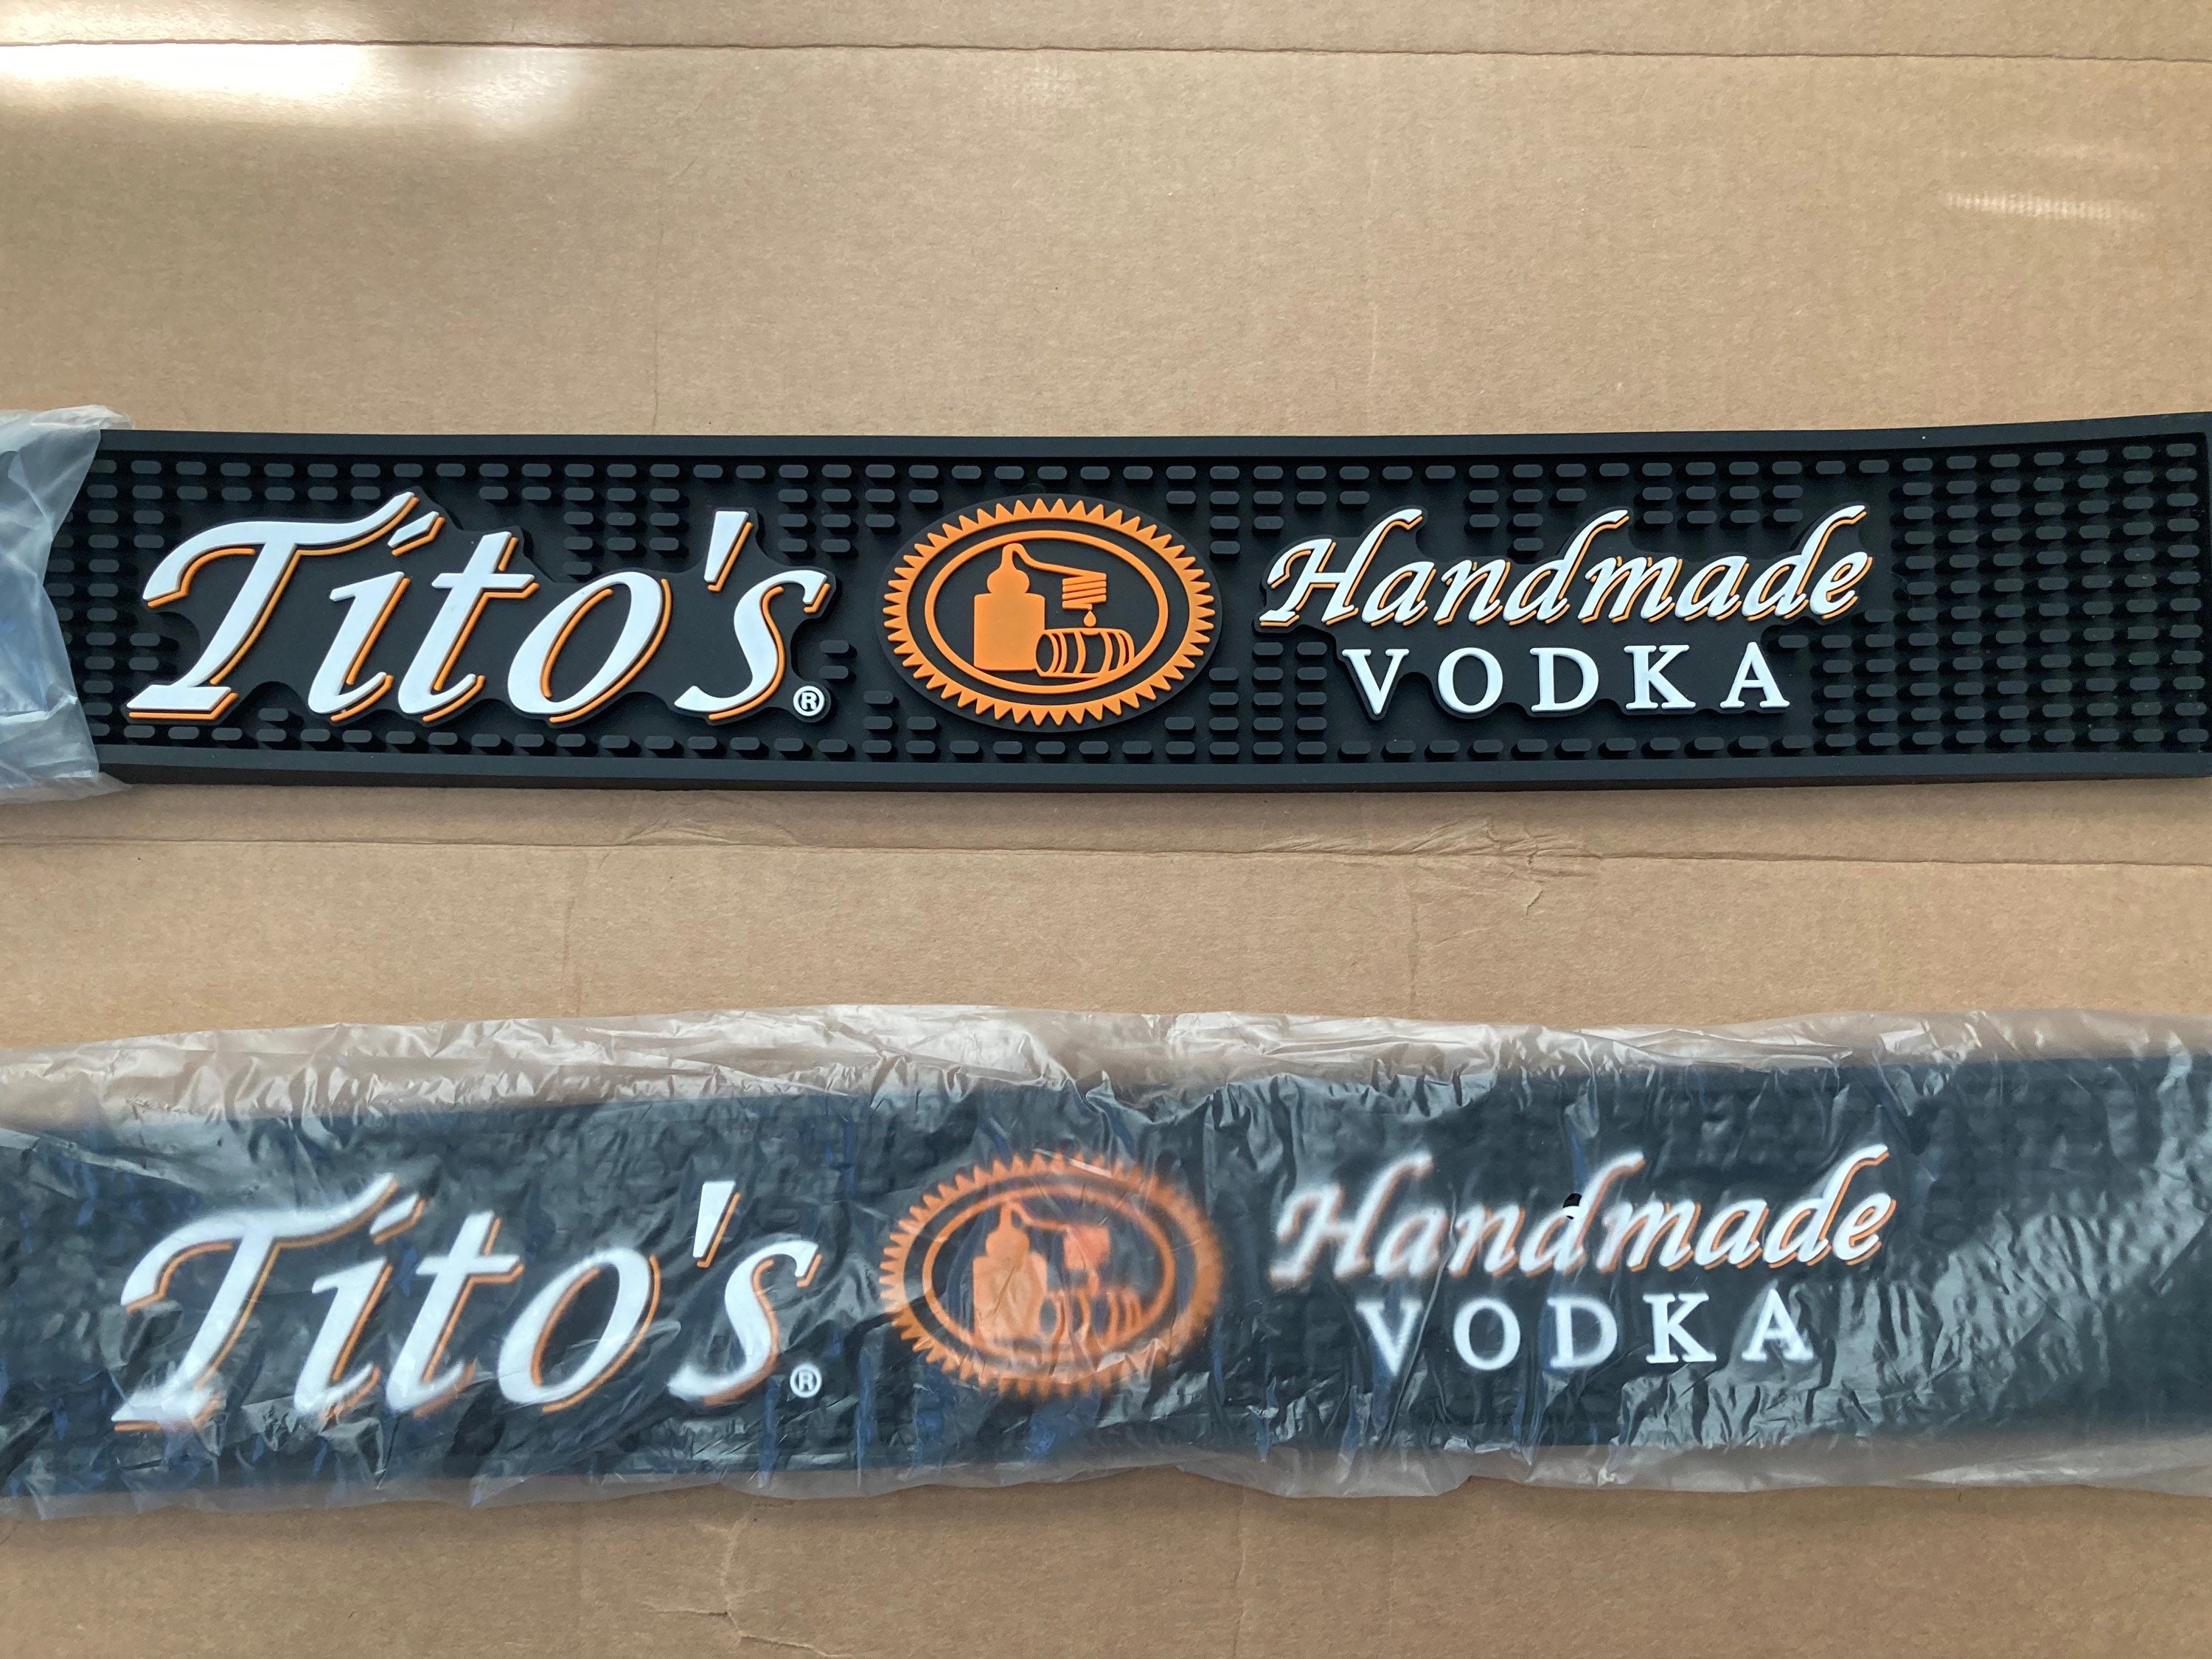 Tito's Bar Key – Tito's Handmade Vodka